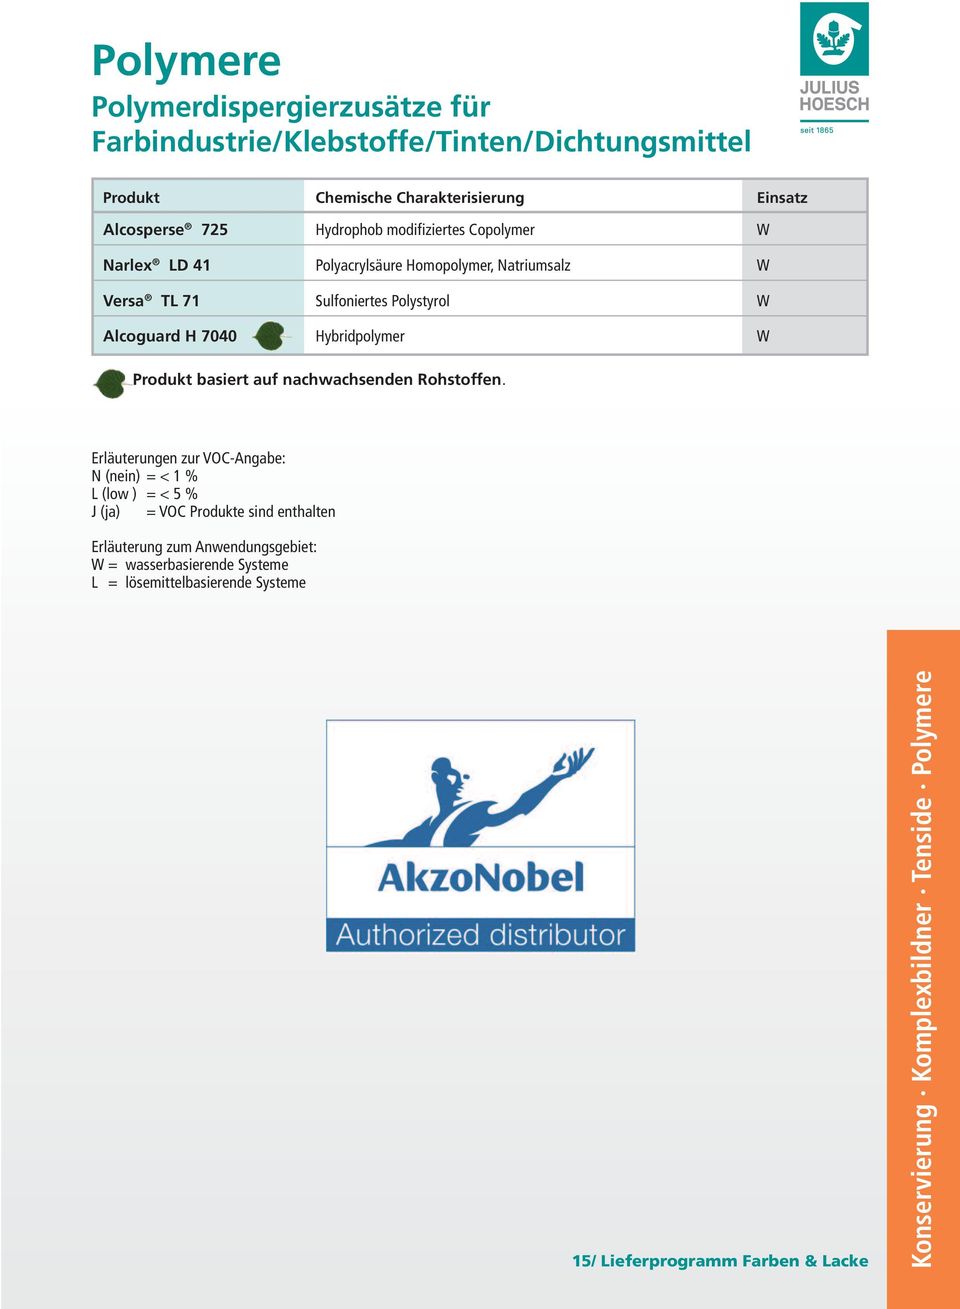 Polystyrol W Alcoguard H 7040 Hybridpolymer W Produkt basiert auf nachwachsenden Rohstoffen.